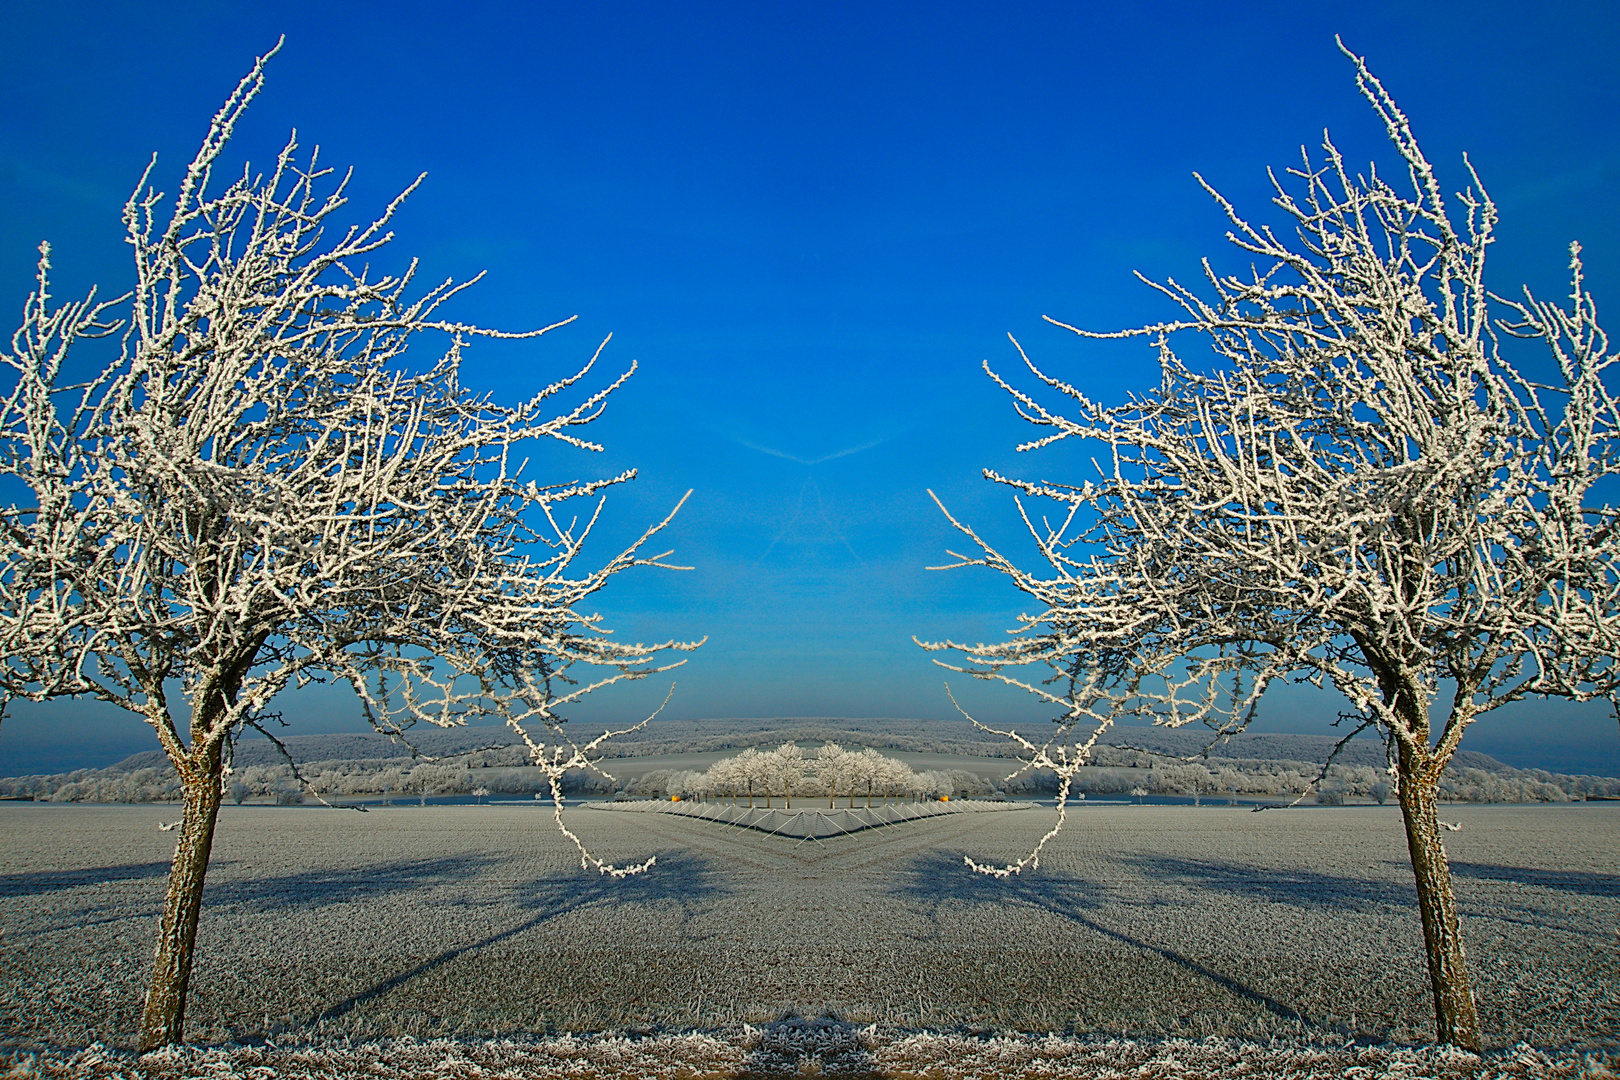 Dienstag ist Spiegeltag - Spiegelcollage einer winterlichen Landschaft